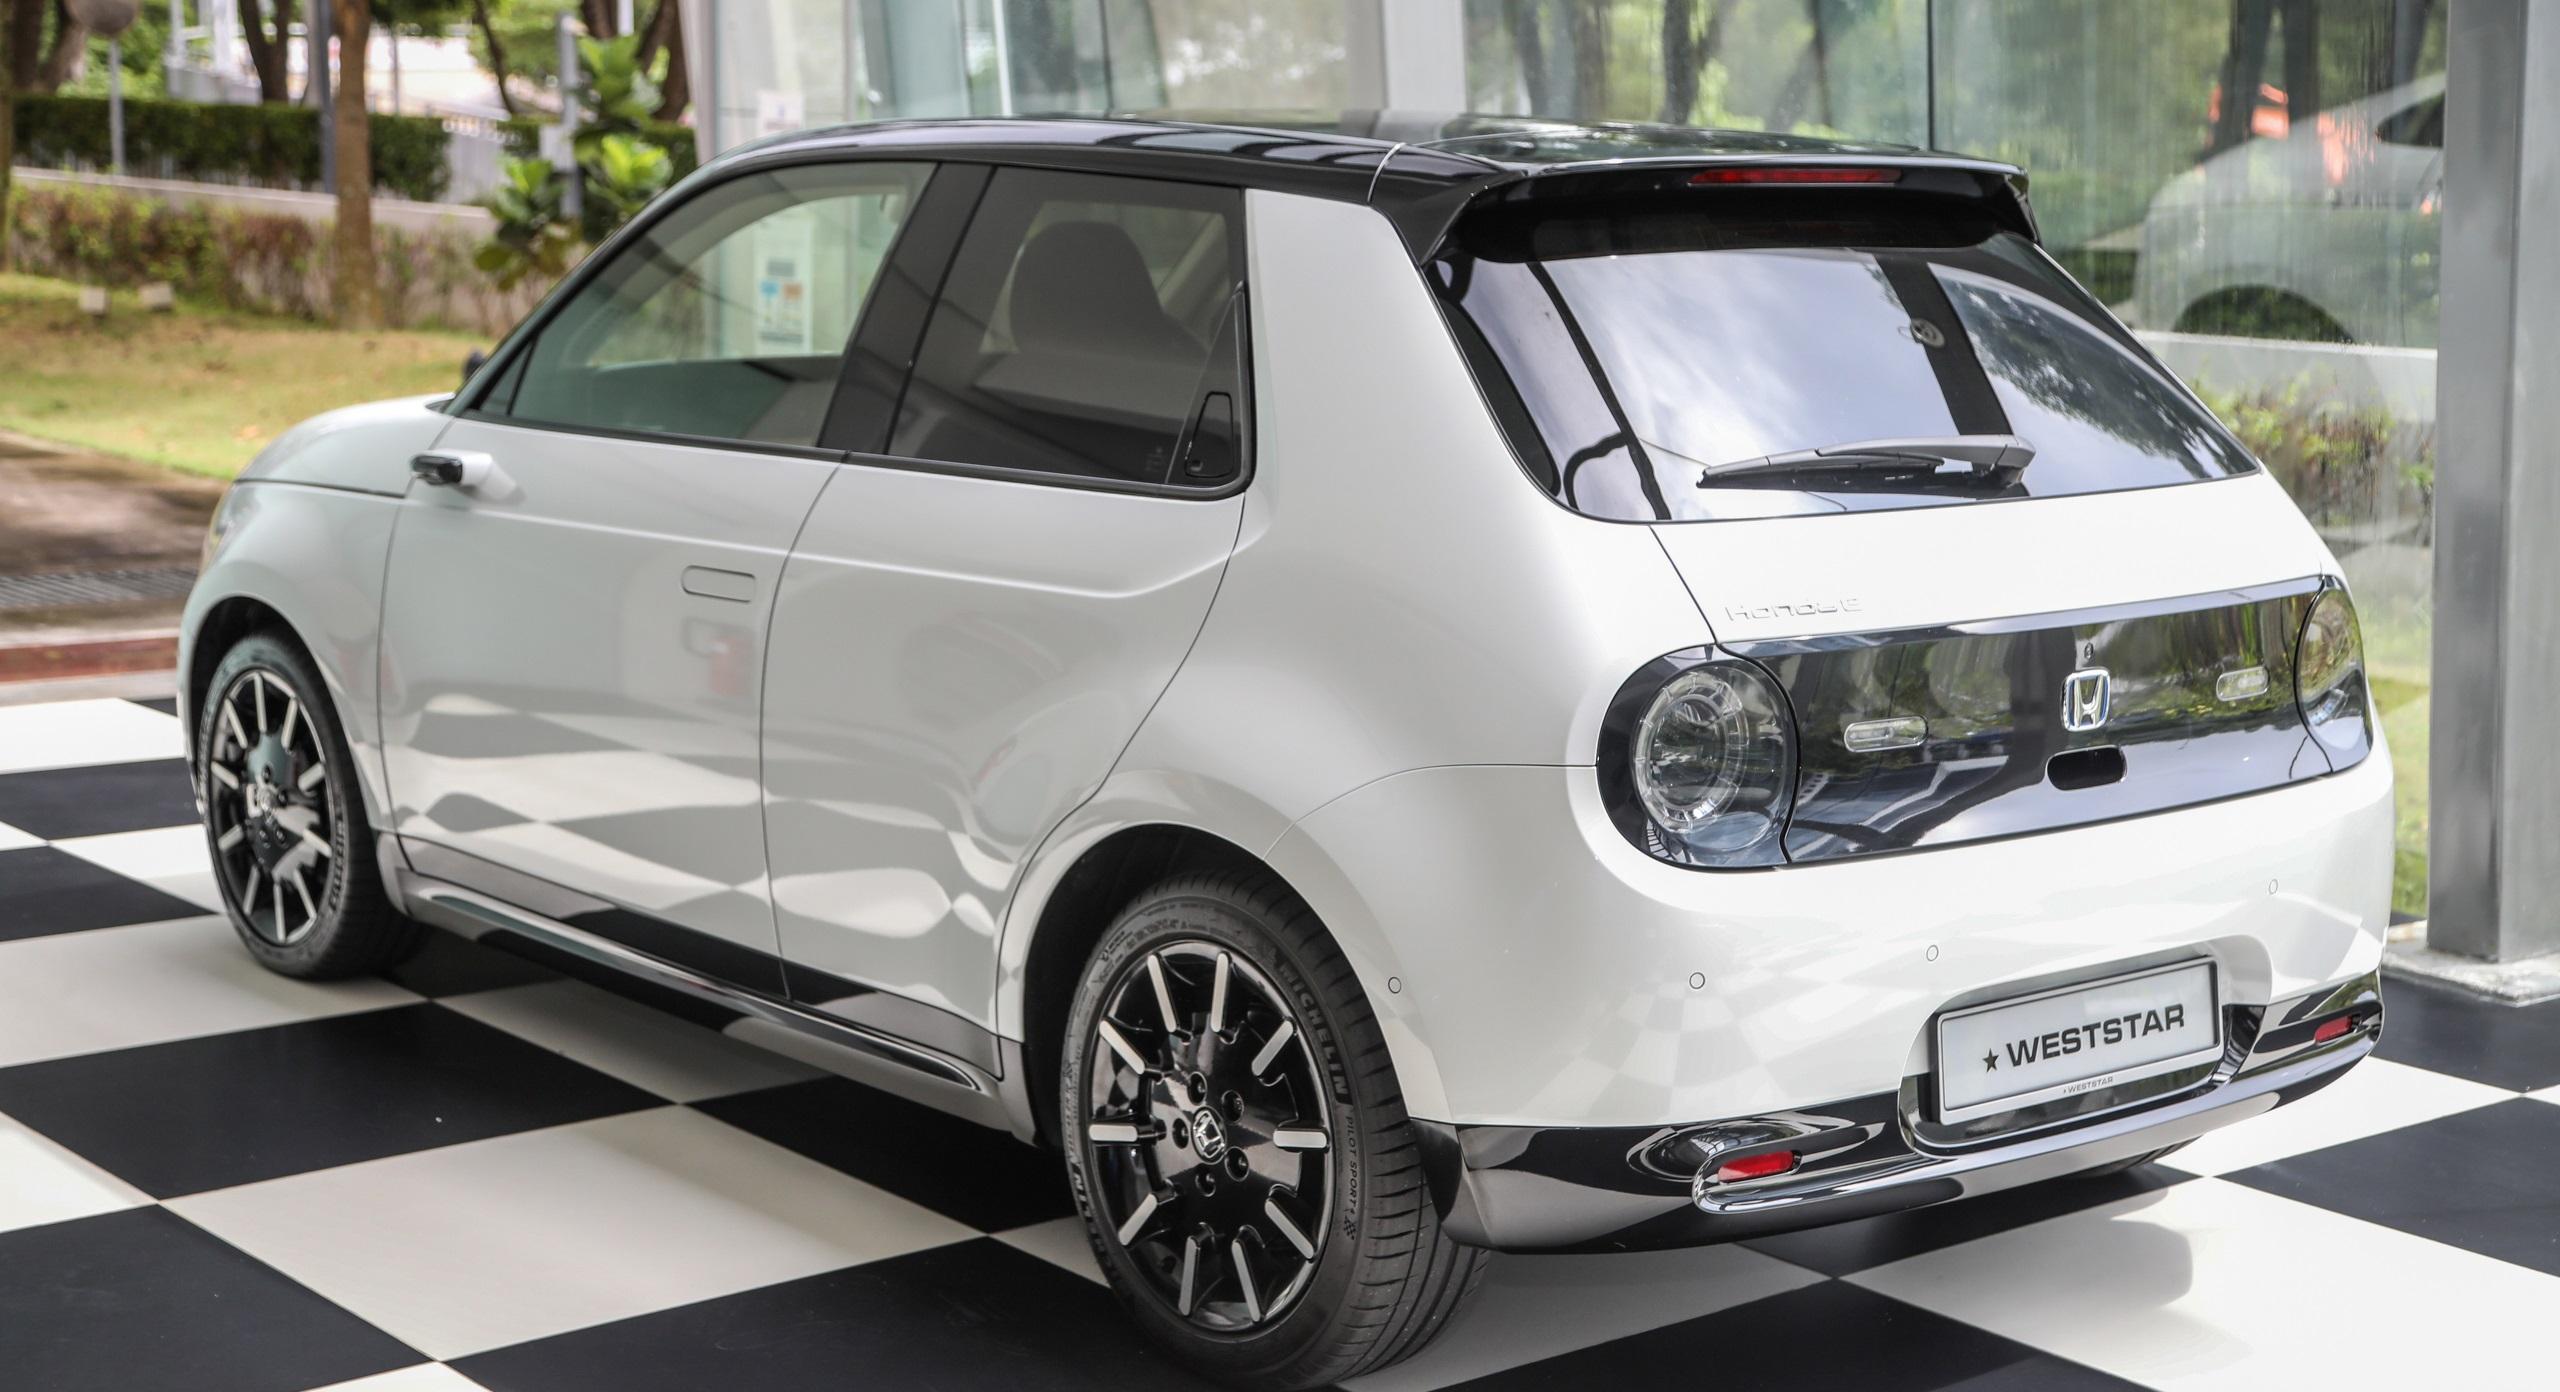 Honda tiết lộ hình ảnh về thiết kế đầy cá tính của mẫu xe điện tiếp theo   Blog Xe Hơi Carmudi